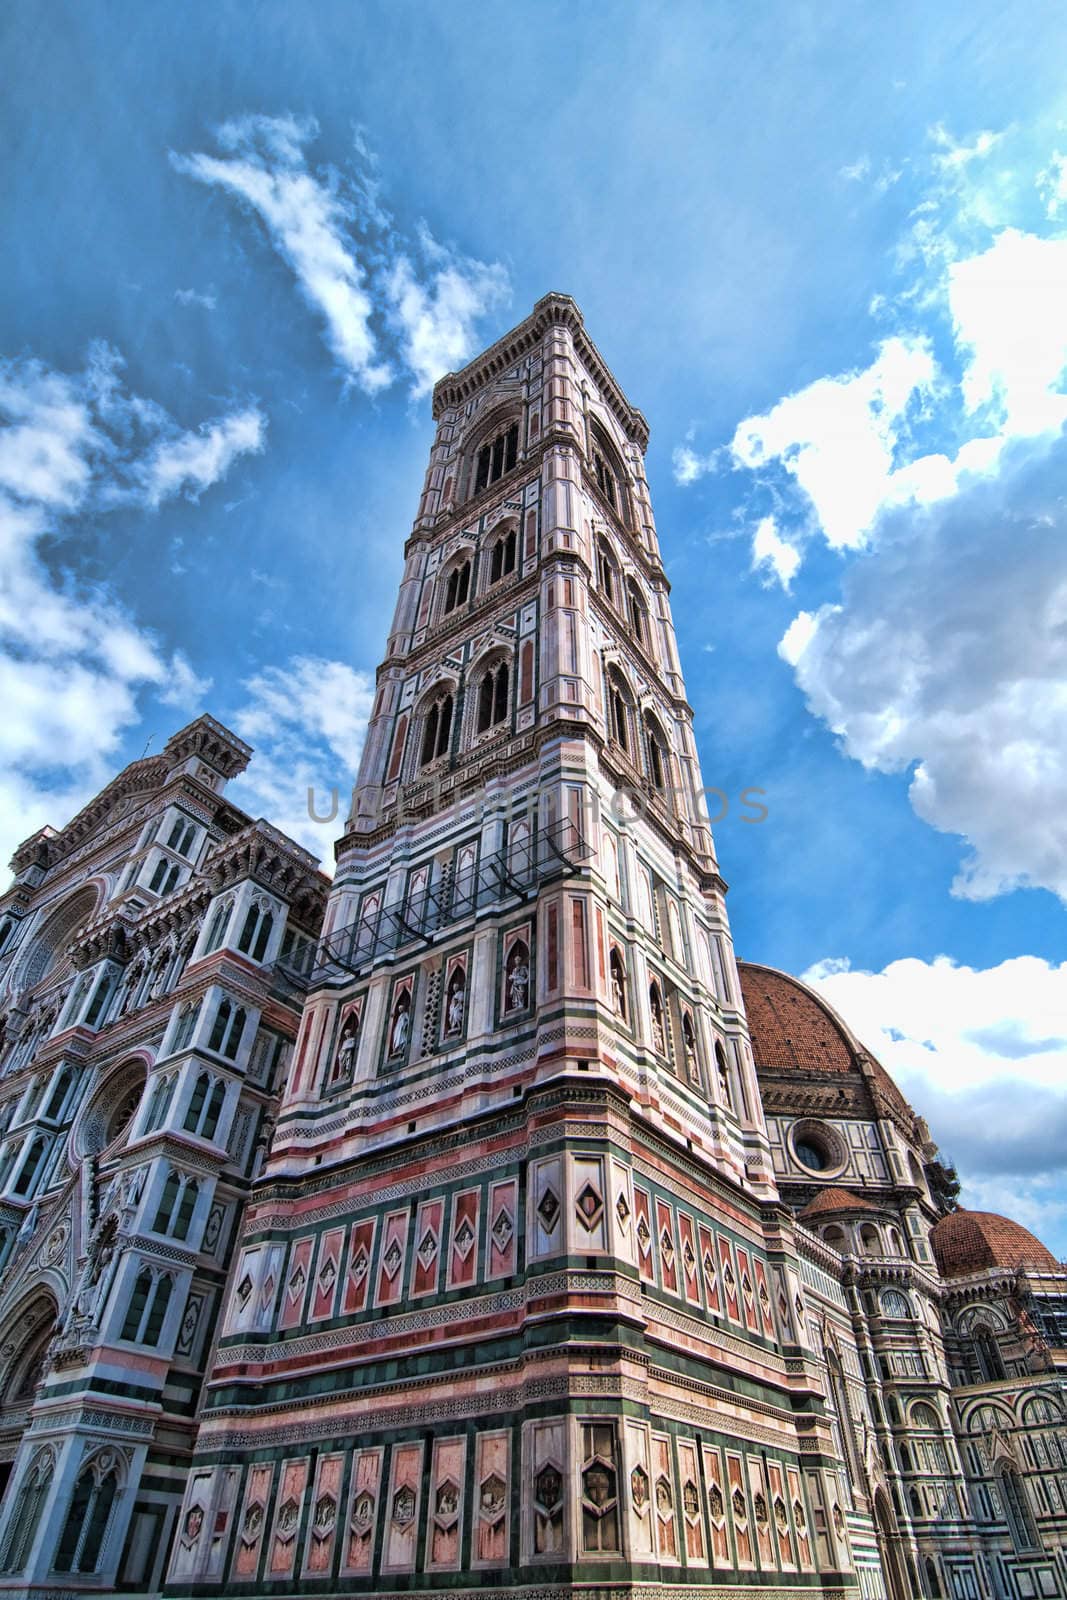 Piazza del Duomo, Florence by jovannig